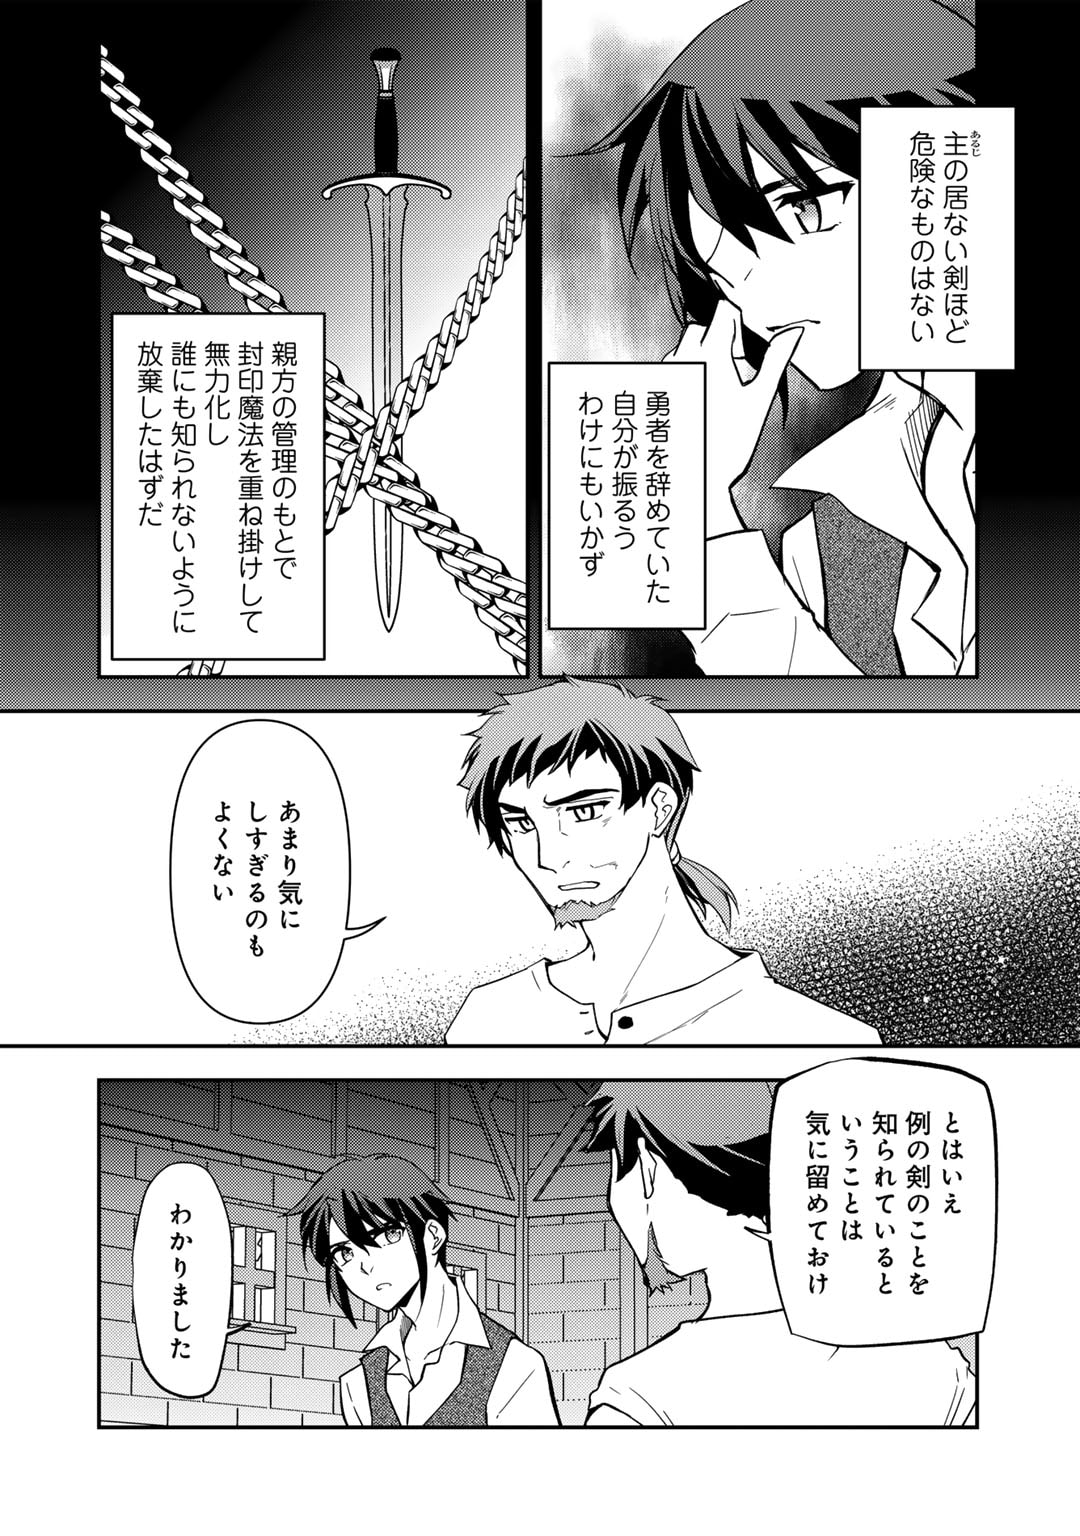 Ore no Saenai Osananajimi ga S Rank Yuusha ni Natte ita ken - Chapter 20 - Page 2